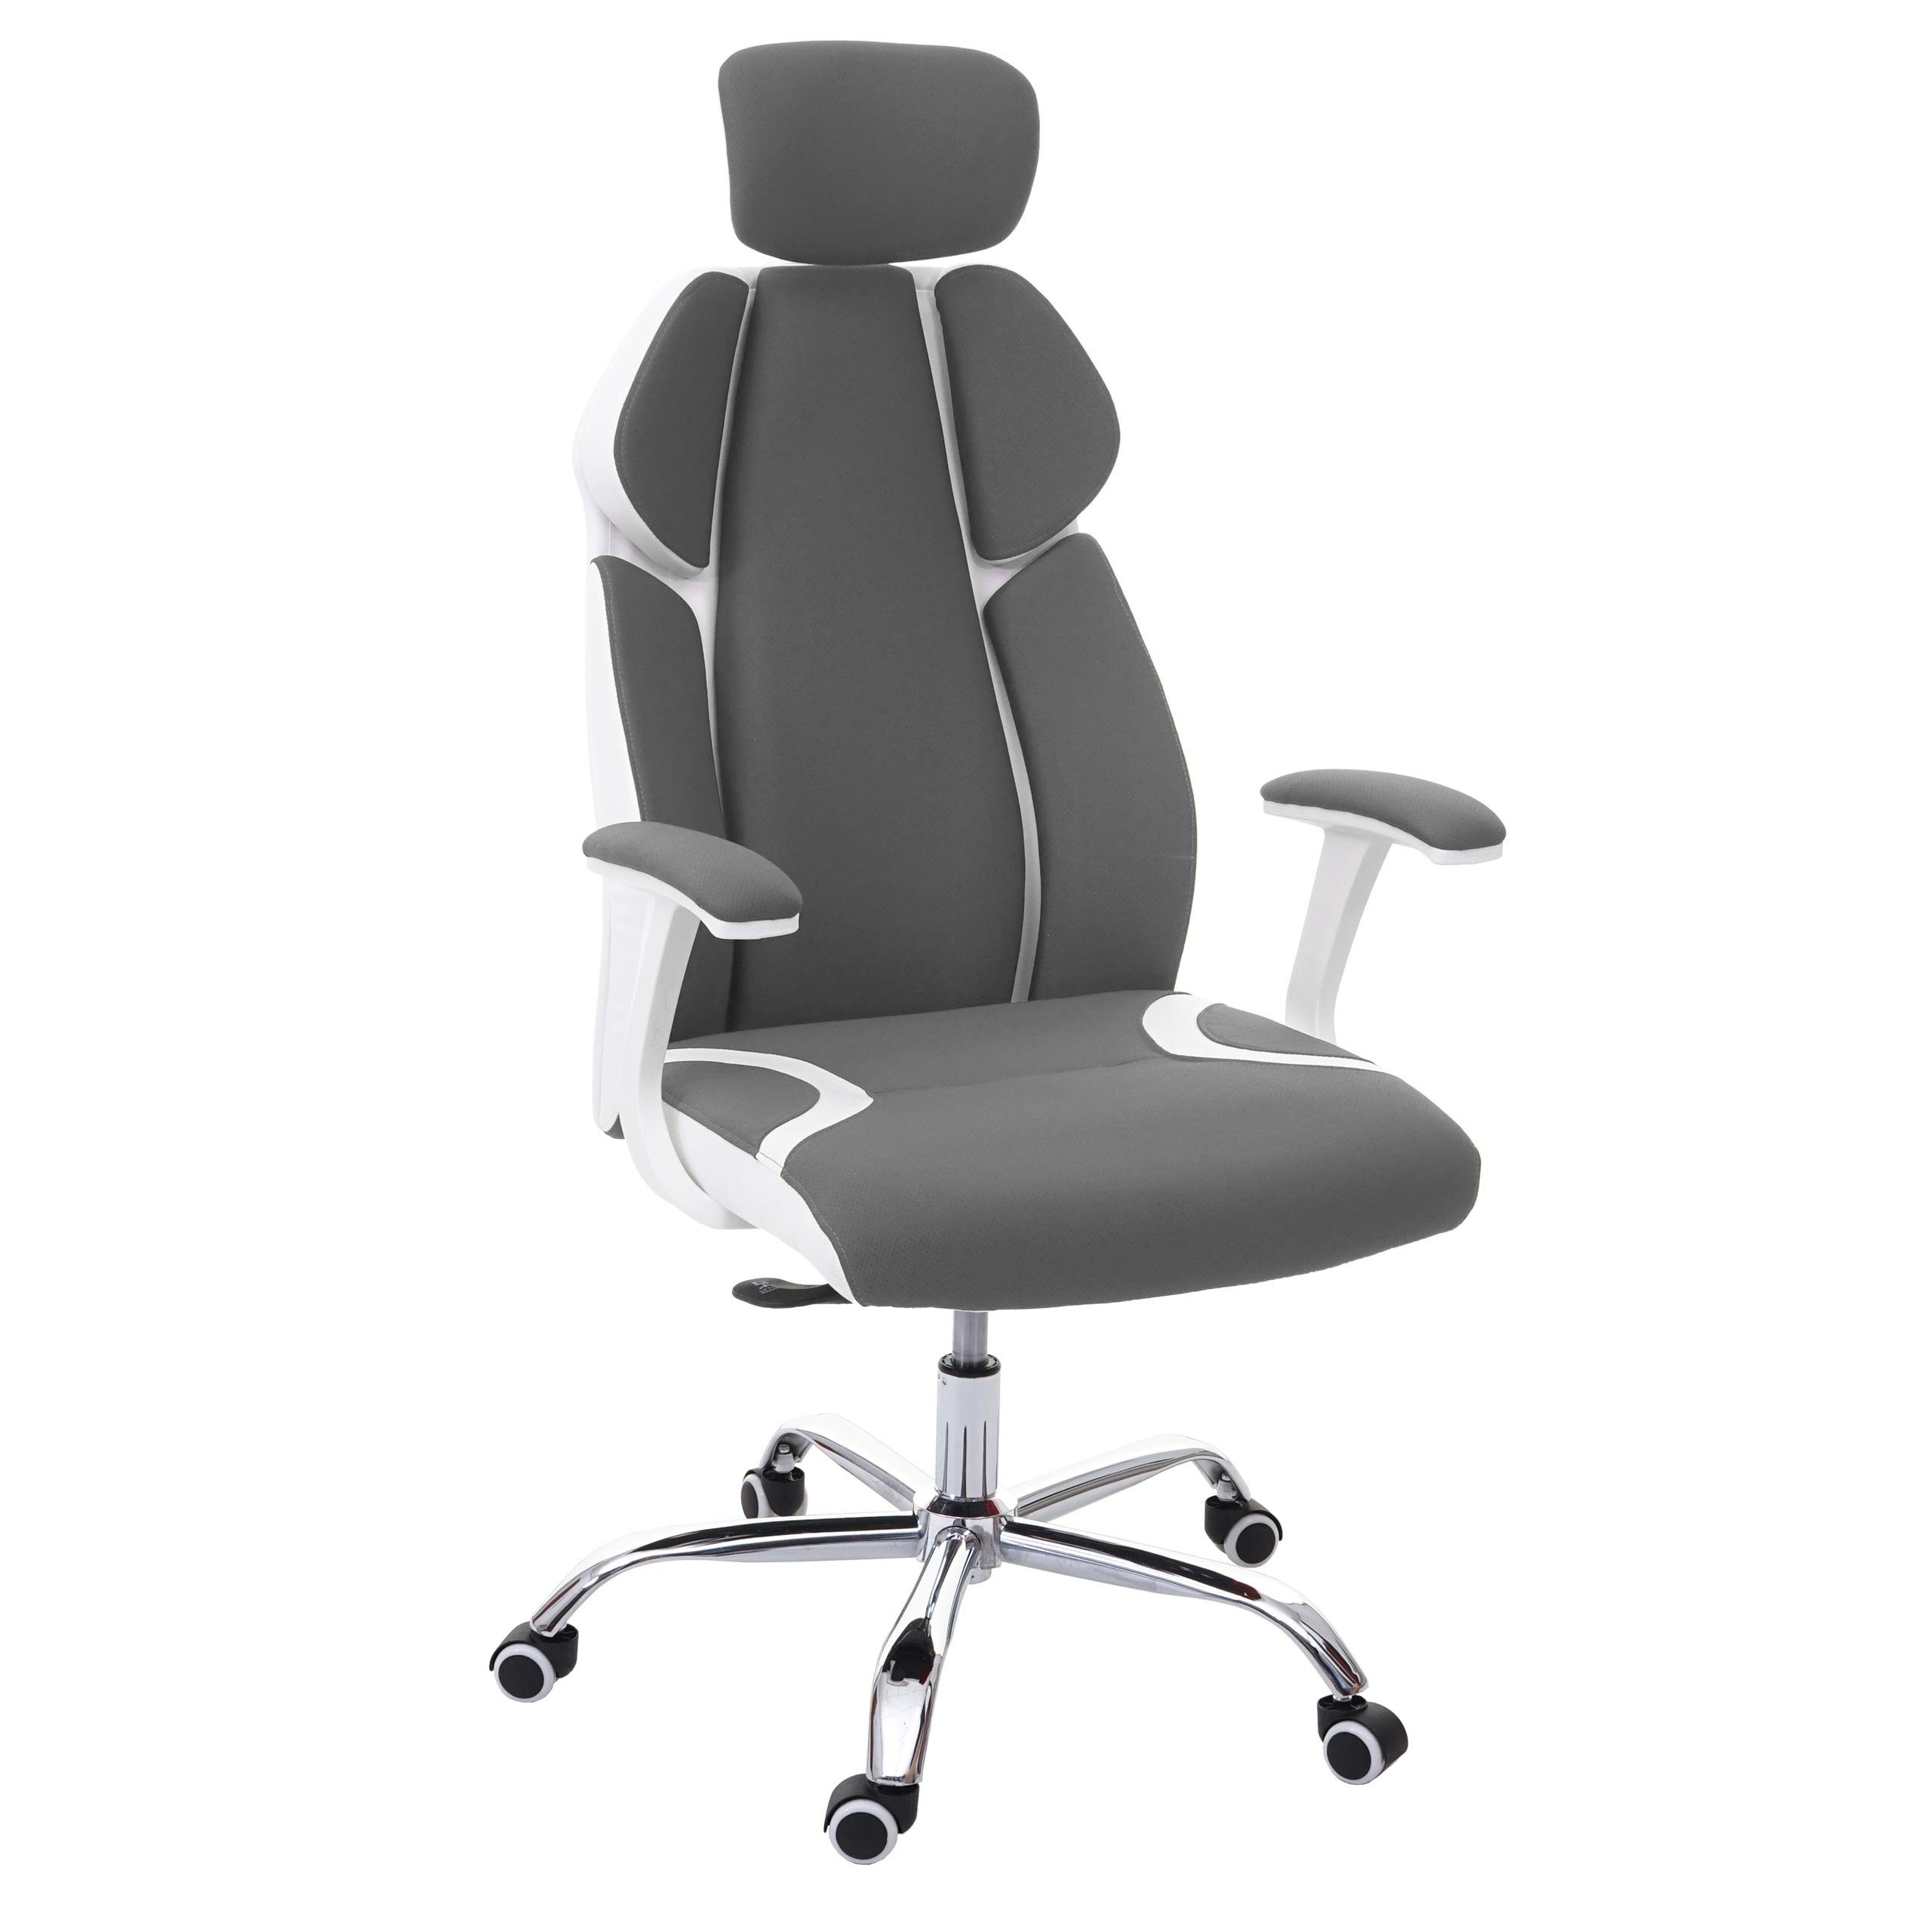 MCW Schreibtischstuhl MCW-F12, Sliding-Funktion, Wippfunktion arretierbar, Höhenverstellbare Kopfstütze, Sliding Sitz grau/weiß